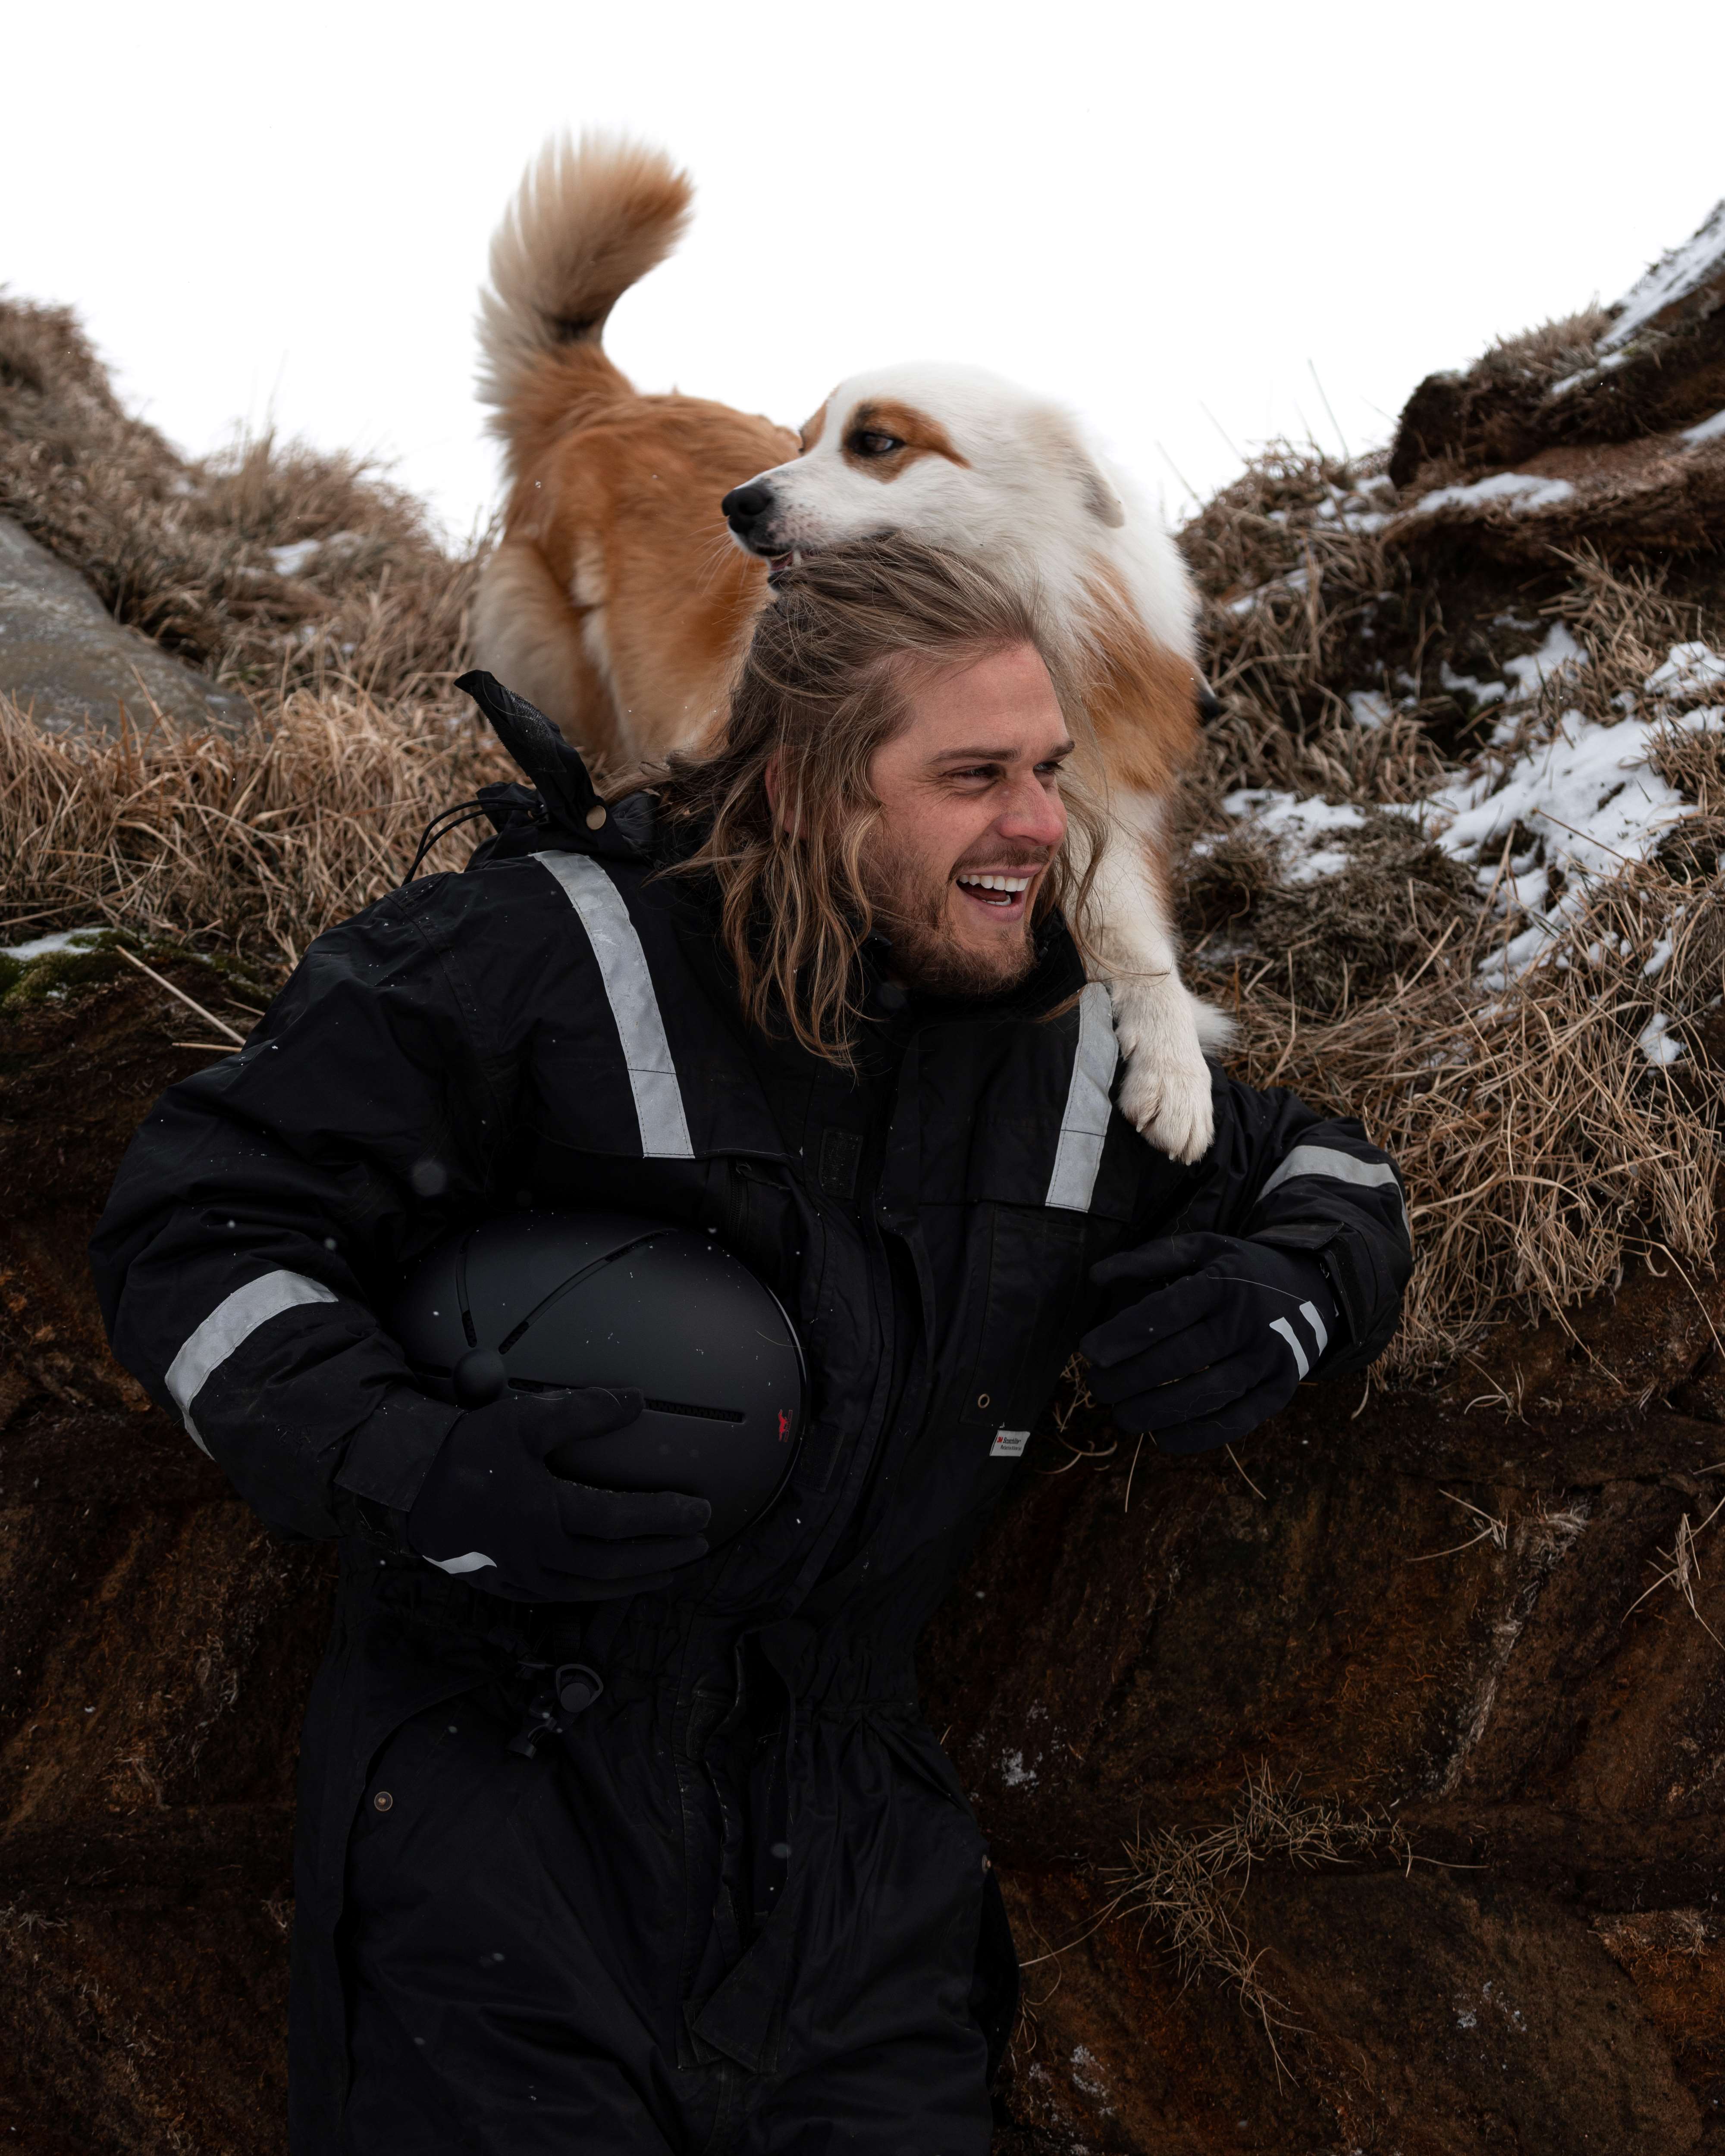 Rúrik Gíslason plays with a dog on a horse-riding farm in North Iceland.